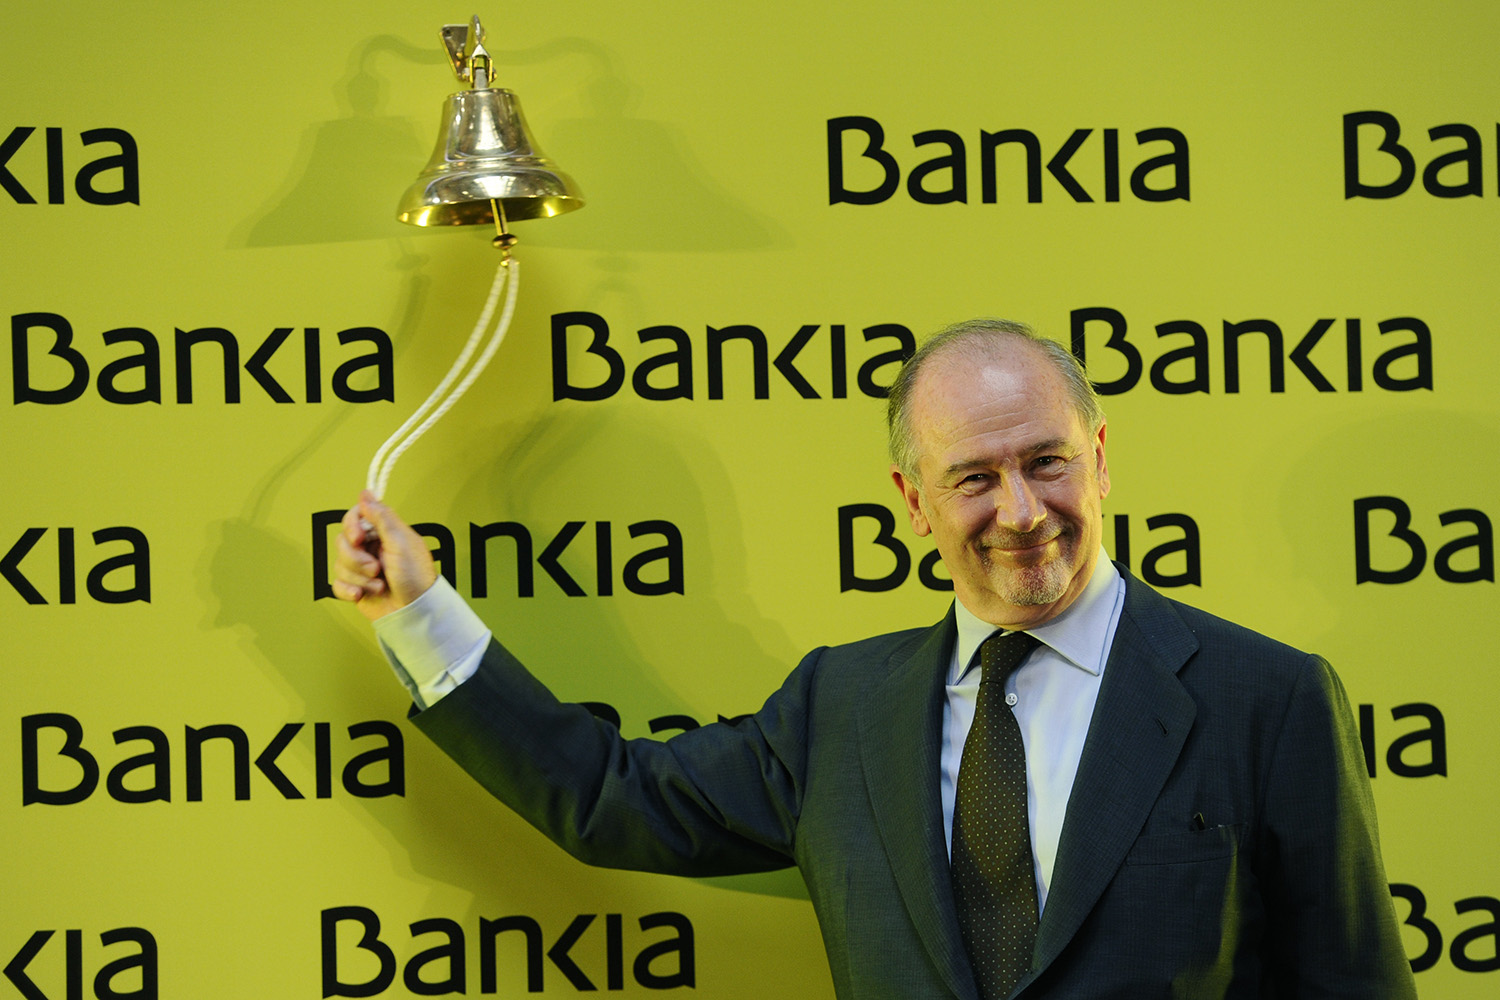 Rebajan de 800 a 34 millones de euros la fianza por el caso Bankia